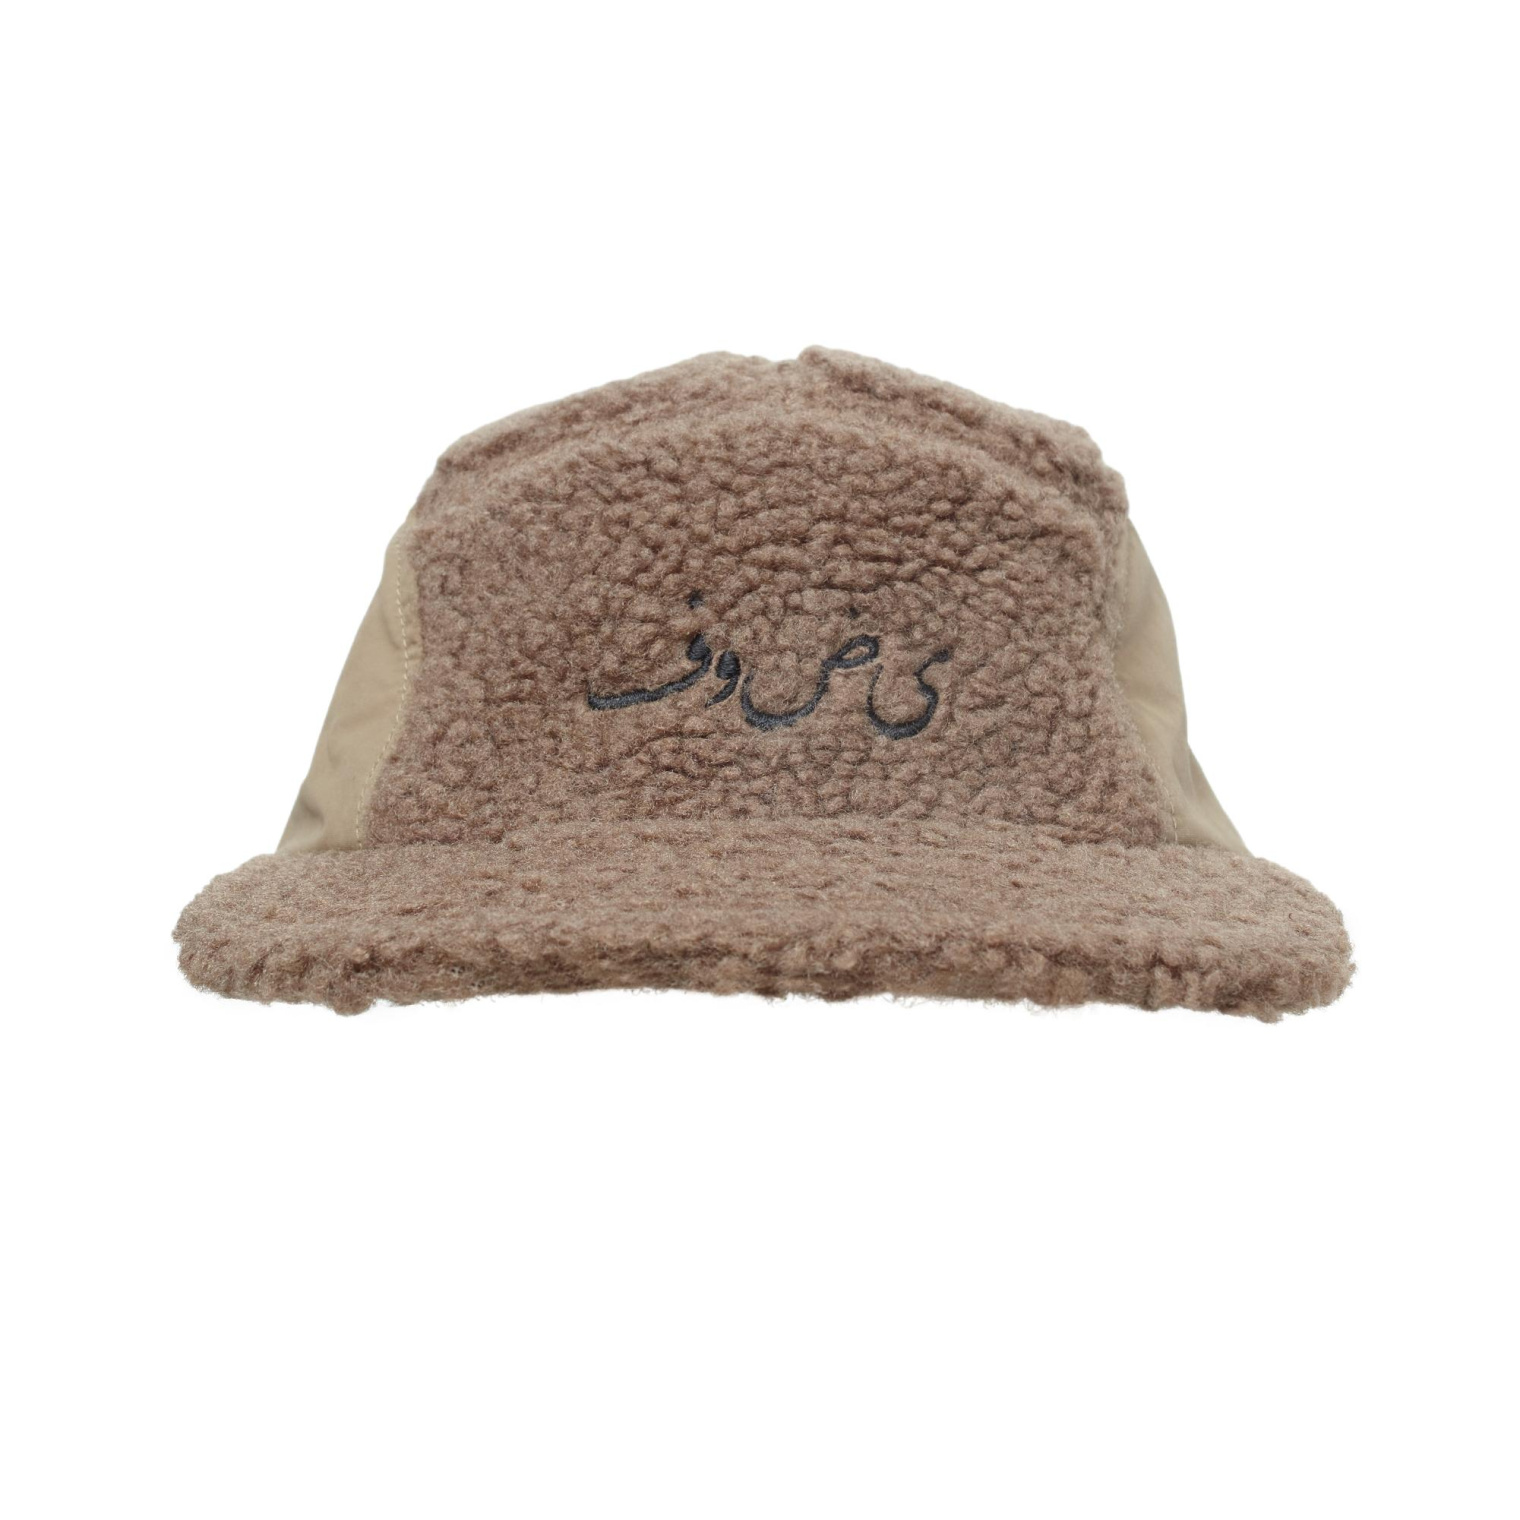 Undercover Fleece and nylon cap